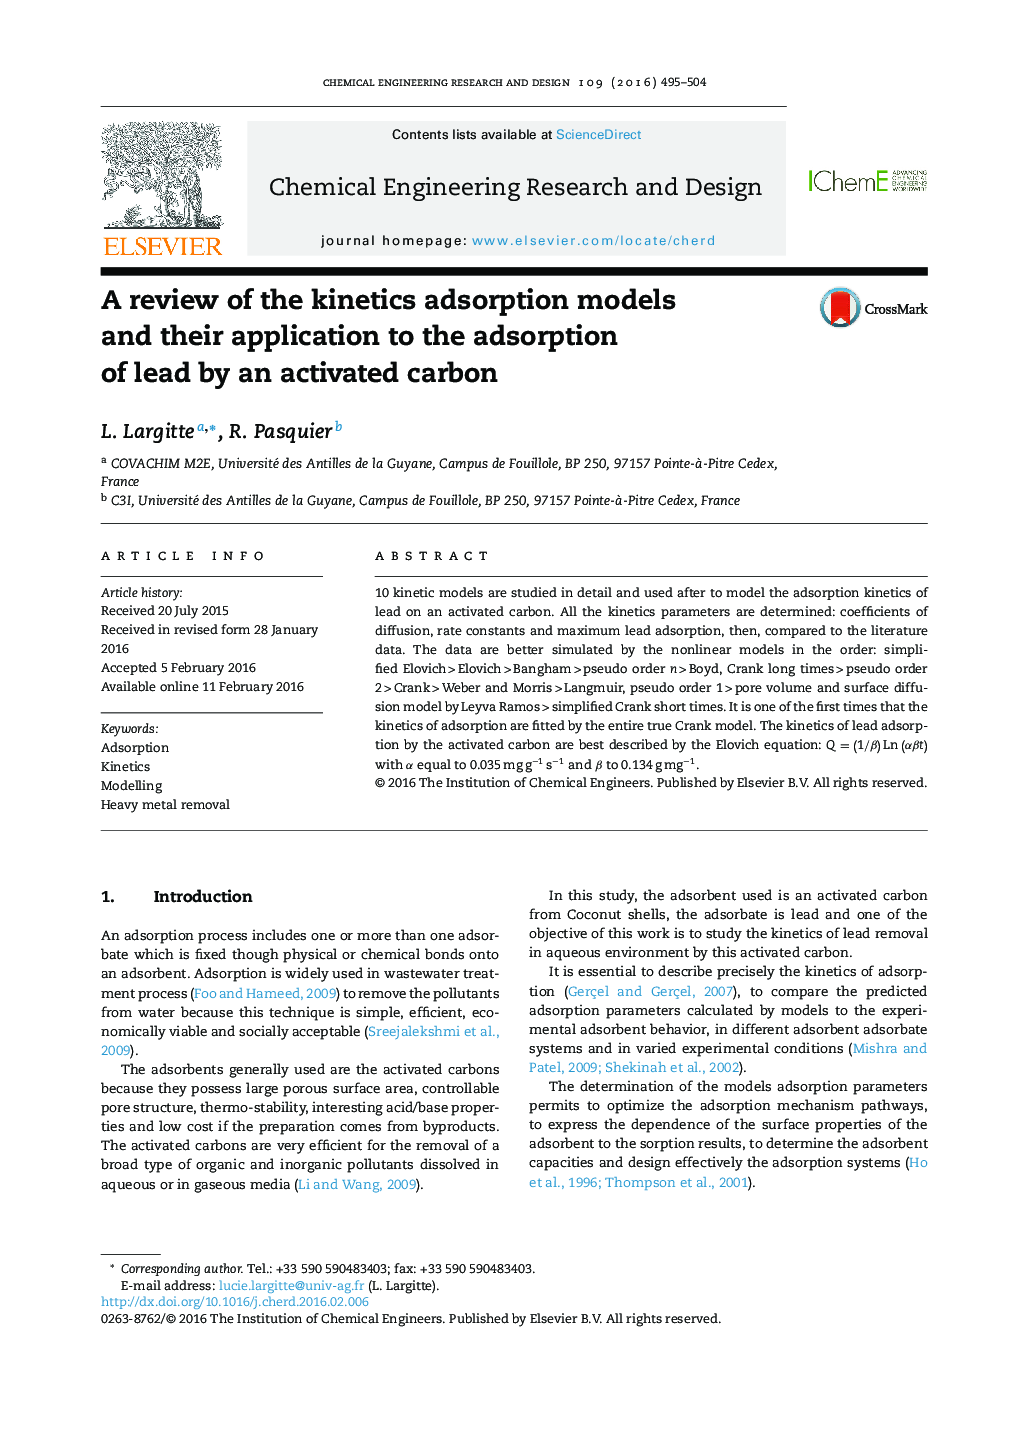 بررسی مدل های جذب سینتیک و کاربرد آنها در جذب سرب توسط کربن فعال 